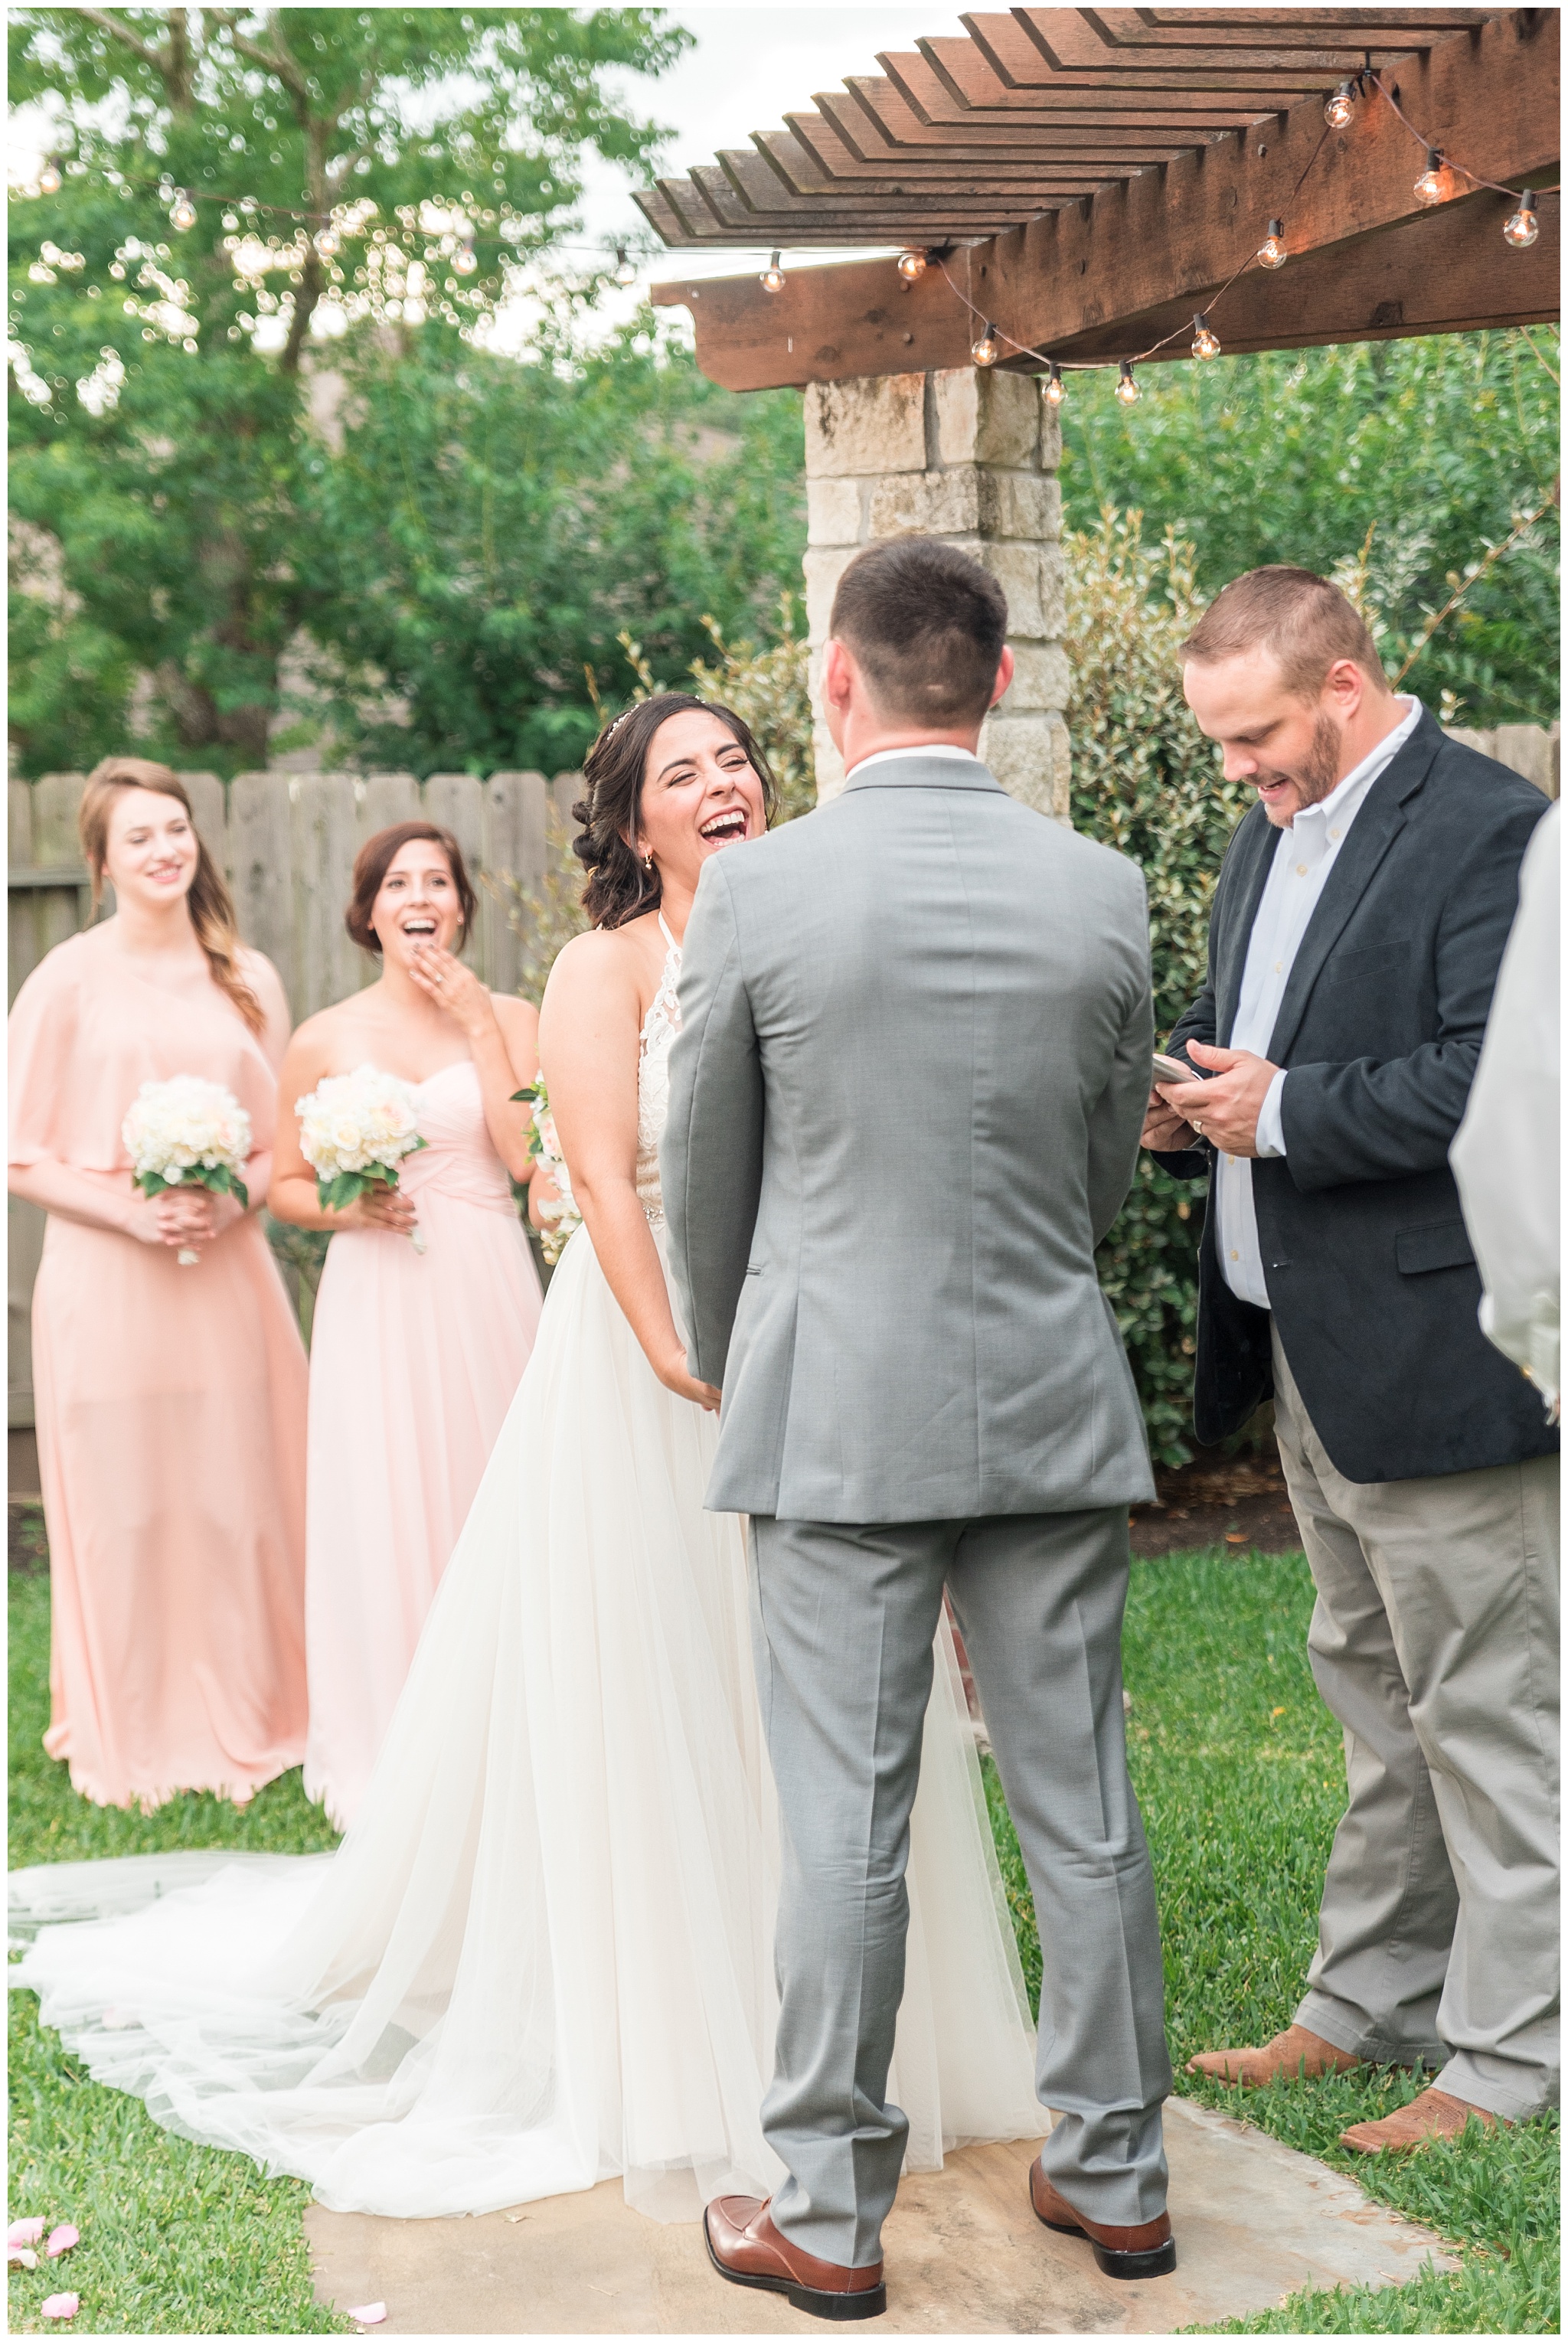 Joyful and Intimate Backyard Wedding Cypress Texas-2017-06-14_0034